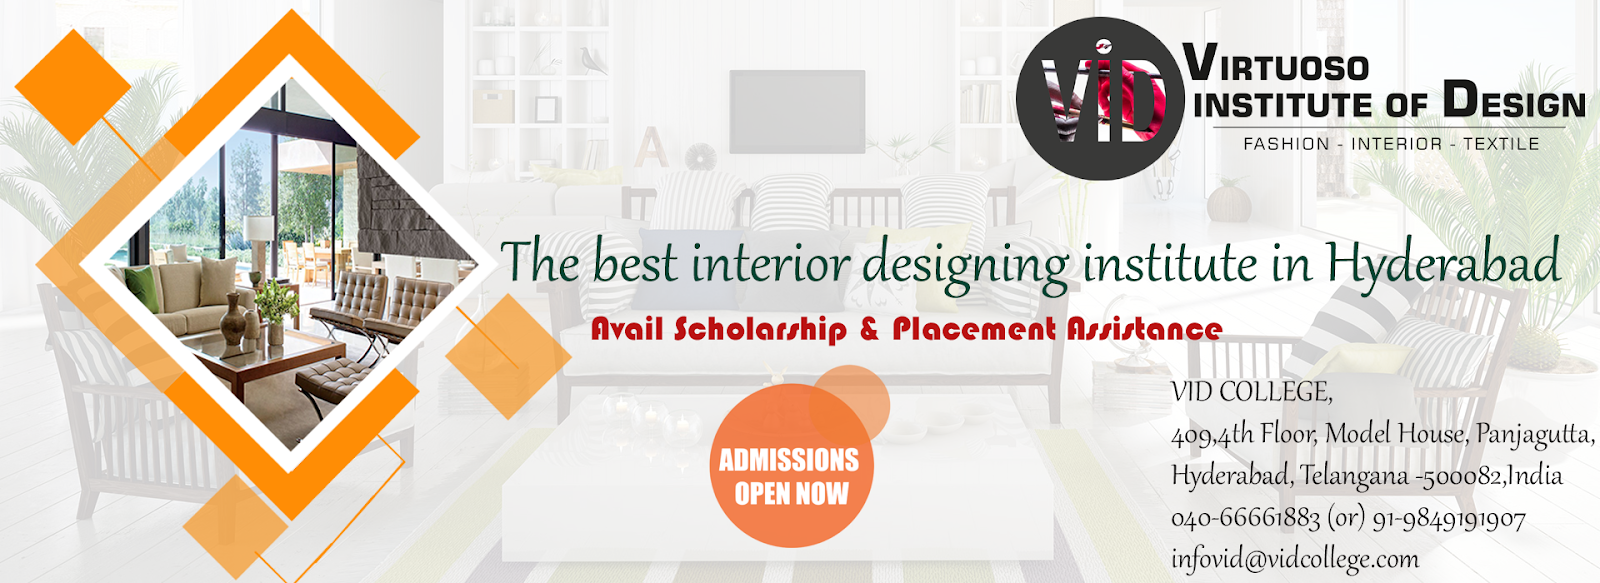 VID COLLEGE The Best Interior Designing institute In Hyderabad